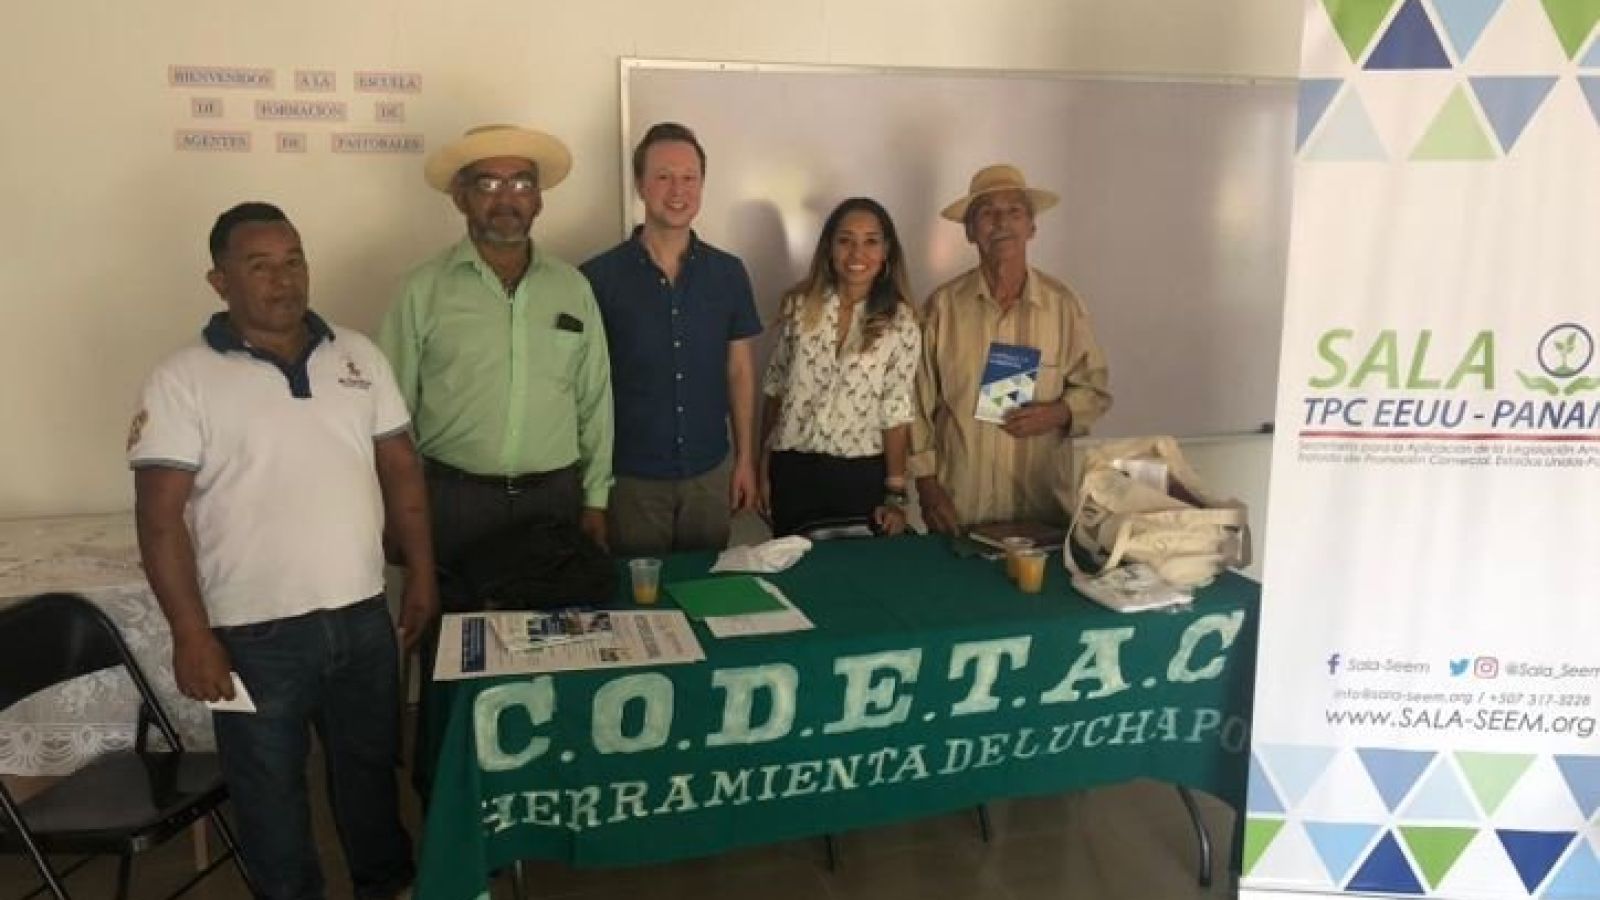 foto de noticia SALA-SEEM Organiza: Reunión de divulgación y coordinación con el Sr. Rubén Bernal y miembros de la Coordinadora para la Defensa de Tierras y Aguas de Coclé (CODETAC)